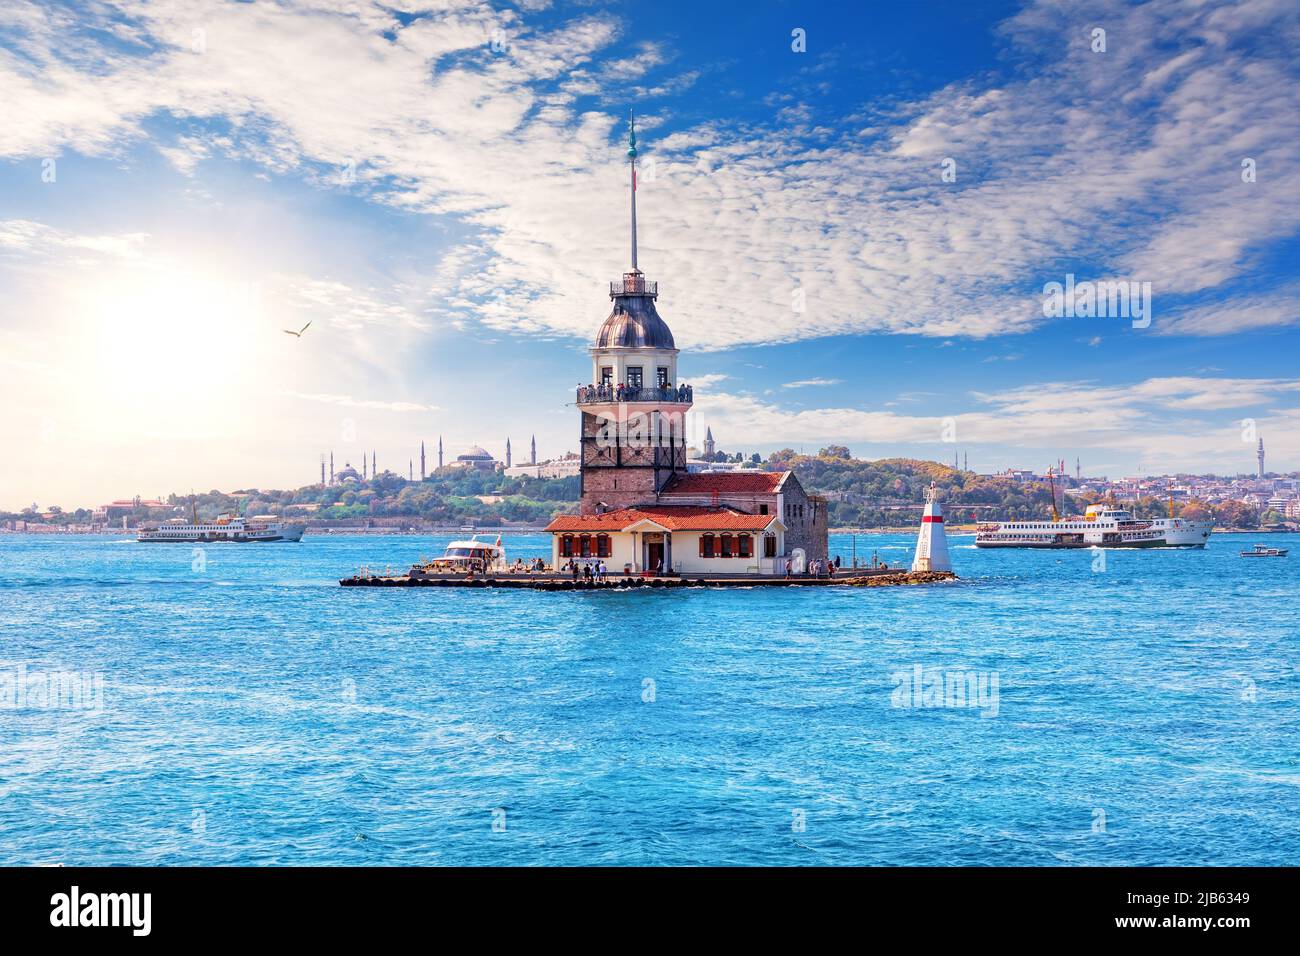 Famous Maiden's Tower, Bosphorus, Marmara sea, Istanbul Turkey. Stock Photo